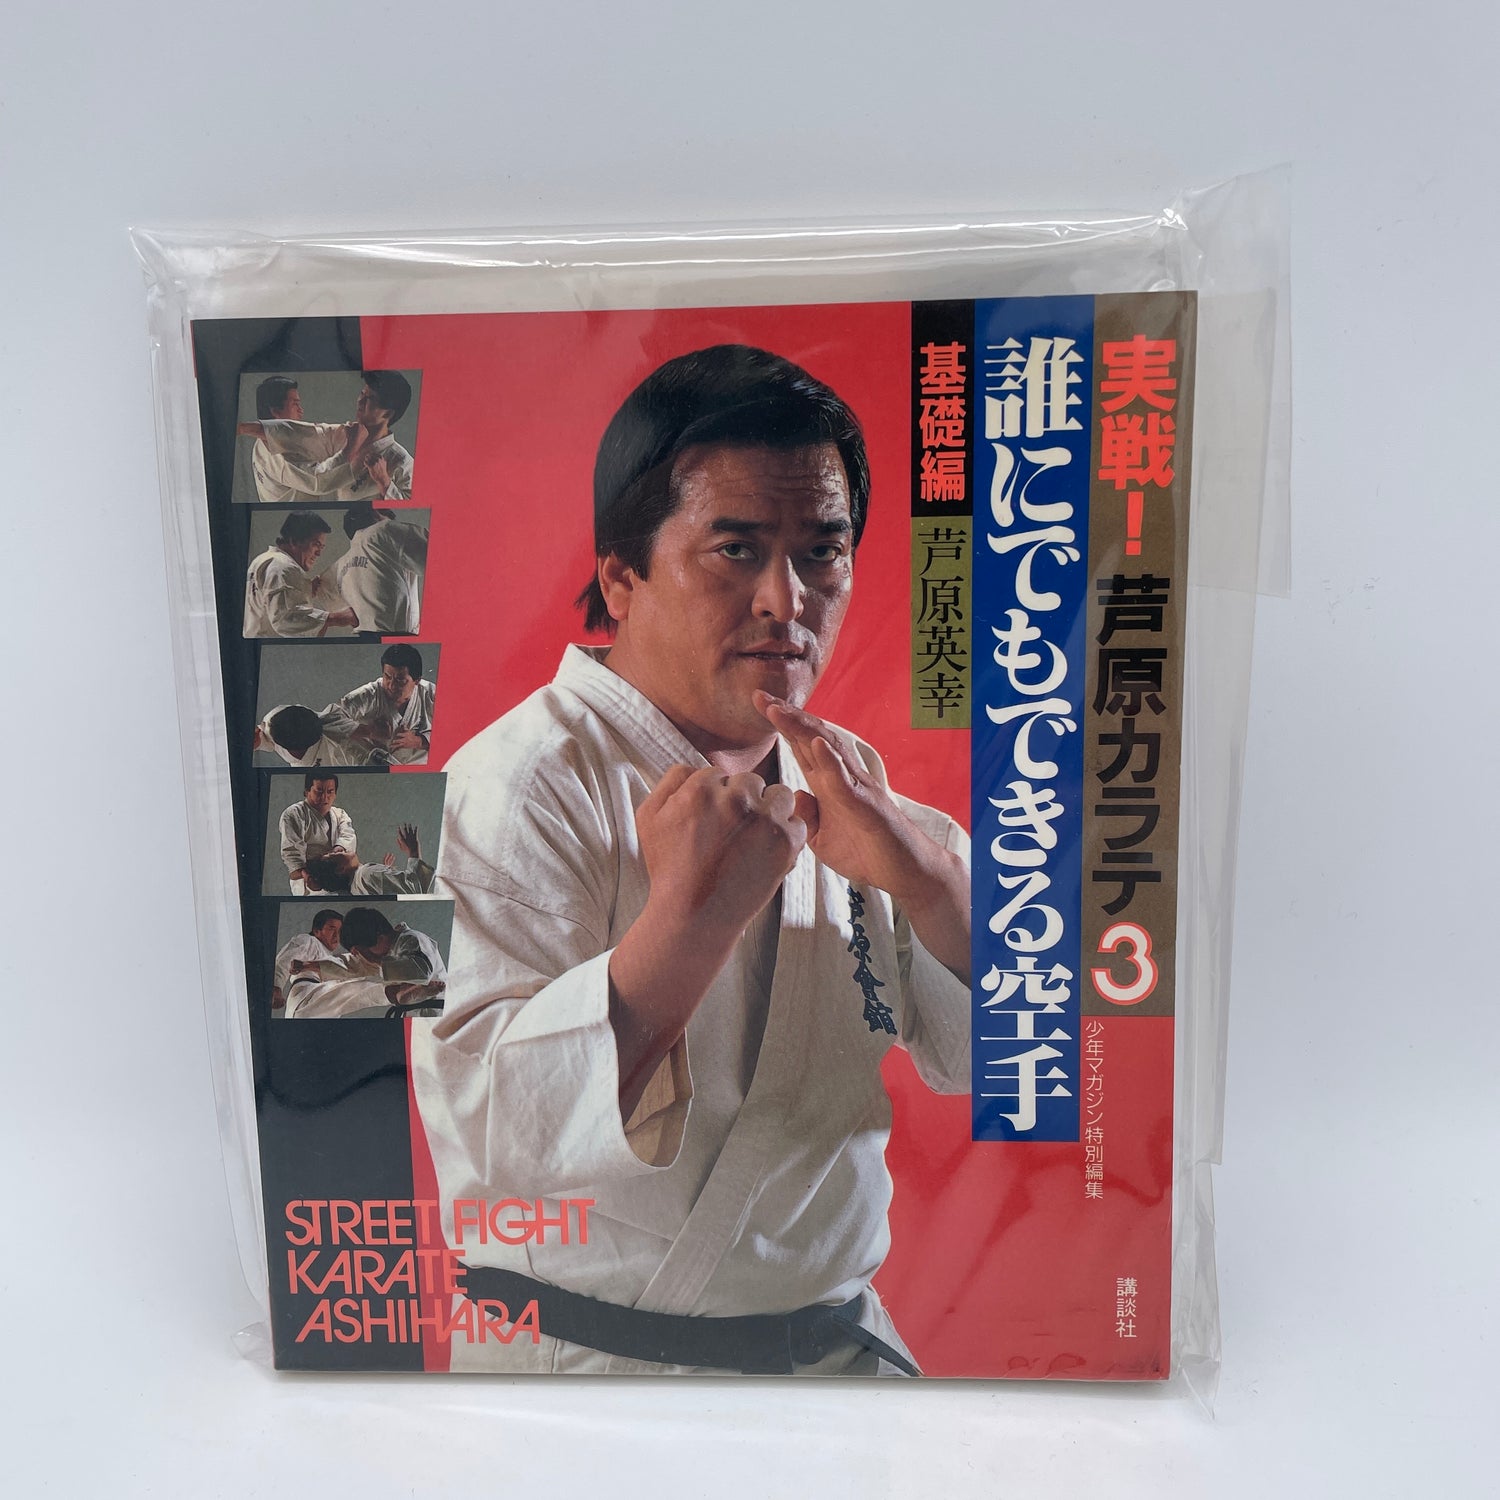 Street Fight Karate Libro 3 de Hideyuki Ashihara (Usado)